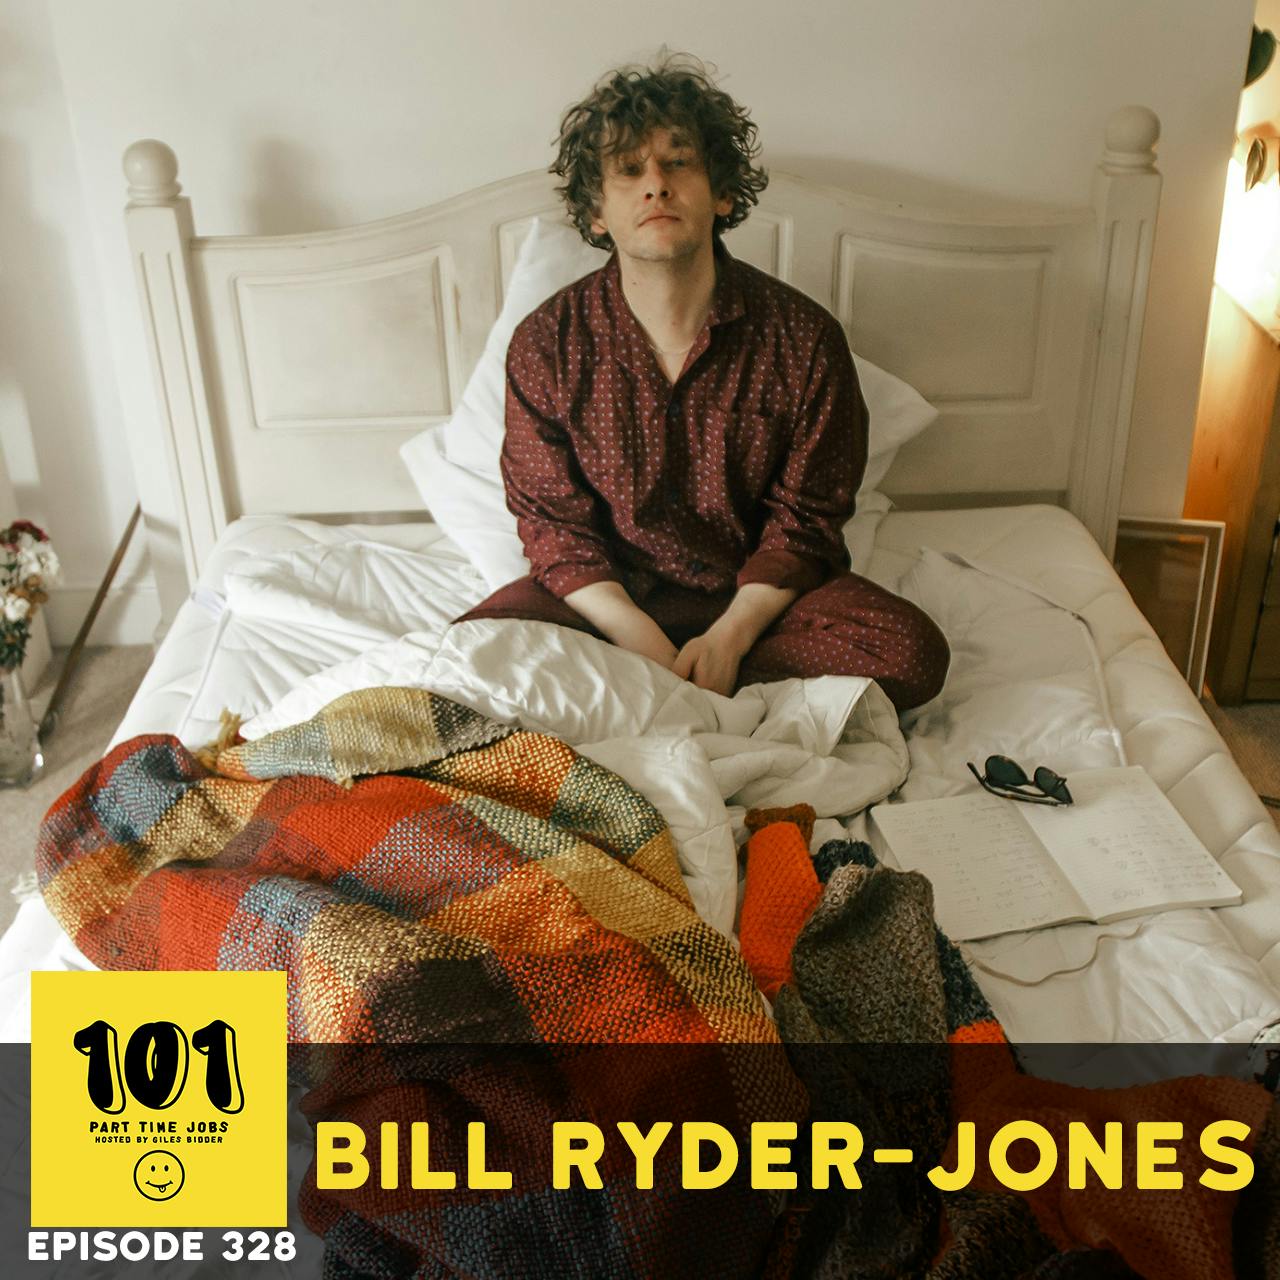 Bill Ryder-Jones - ”Don’t need much”